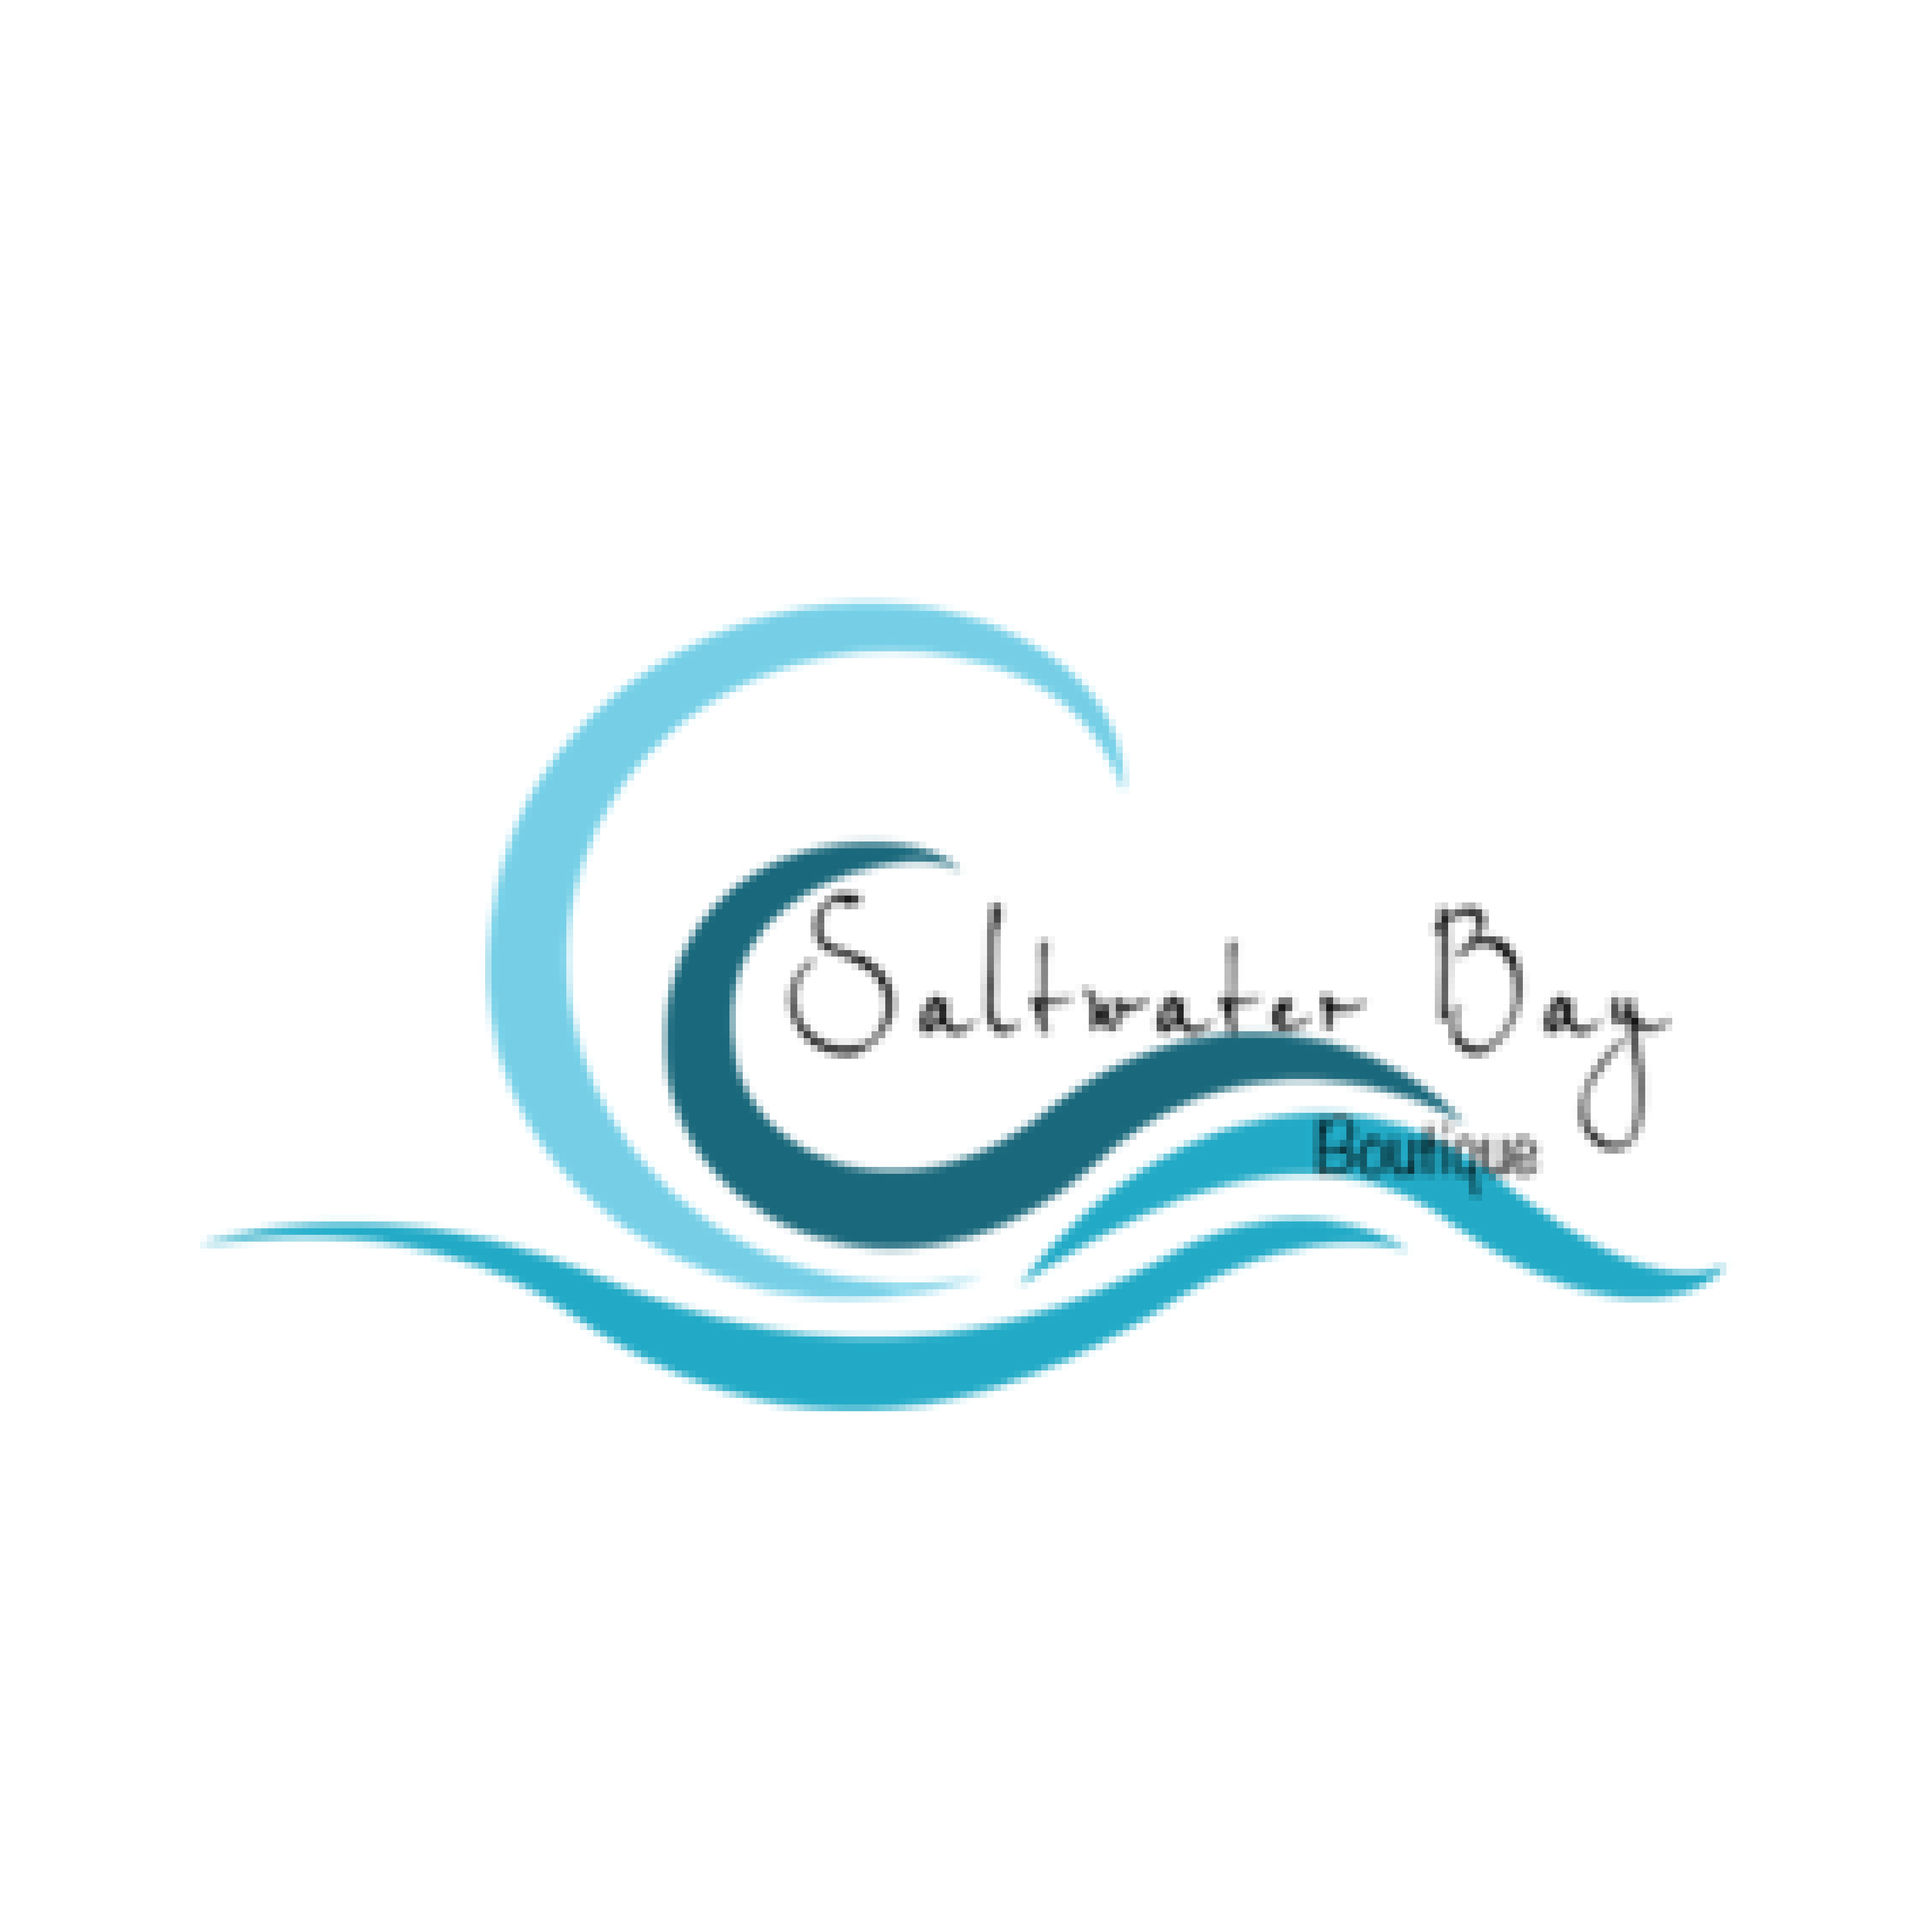 Saltwater Bay logo